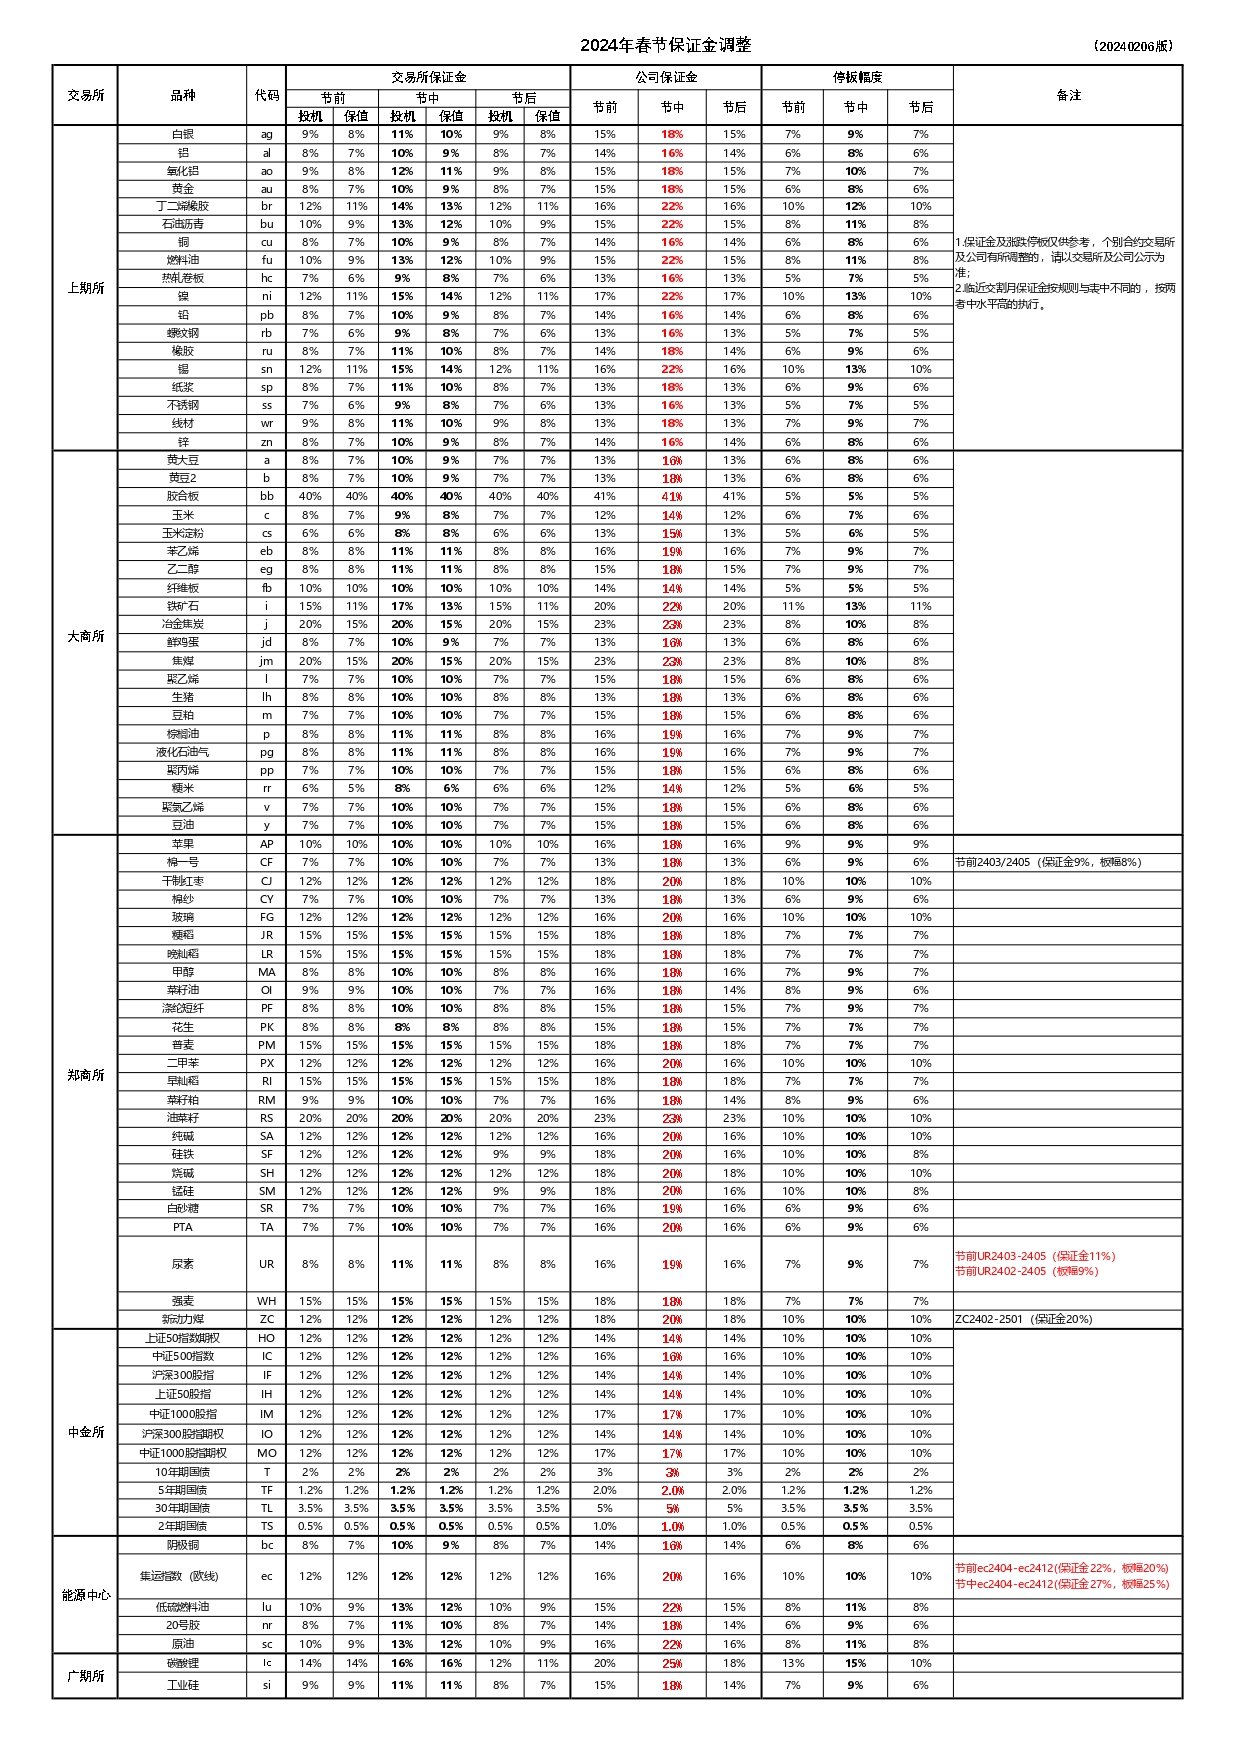 国内期货品种交易保证金（2024年春节调保)  _page-0001.jpg